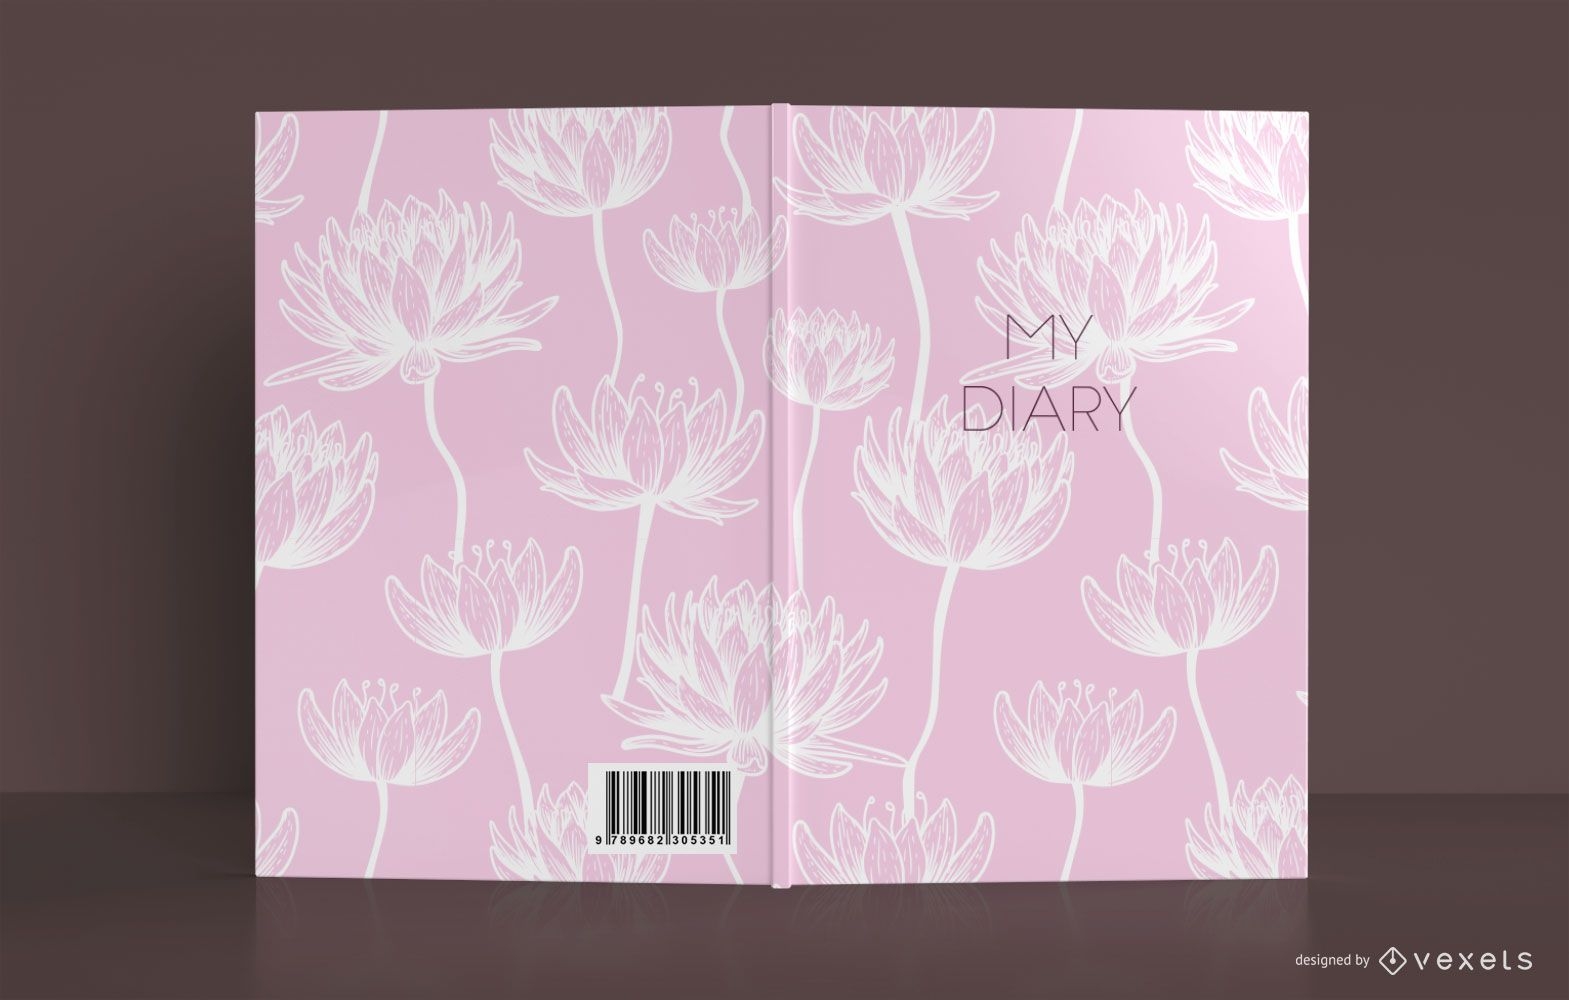 Design da capa do livro do Lotus Diary